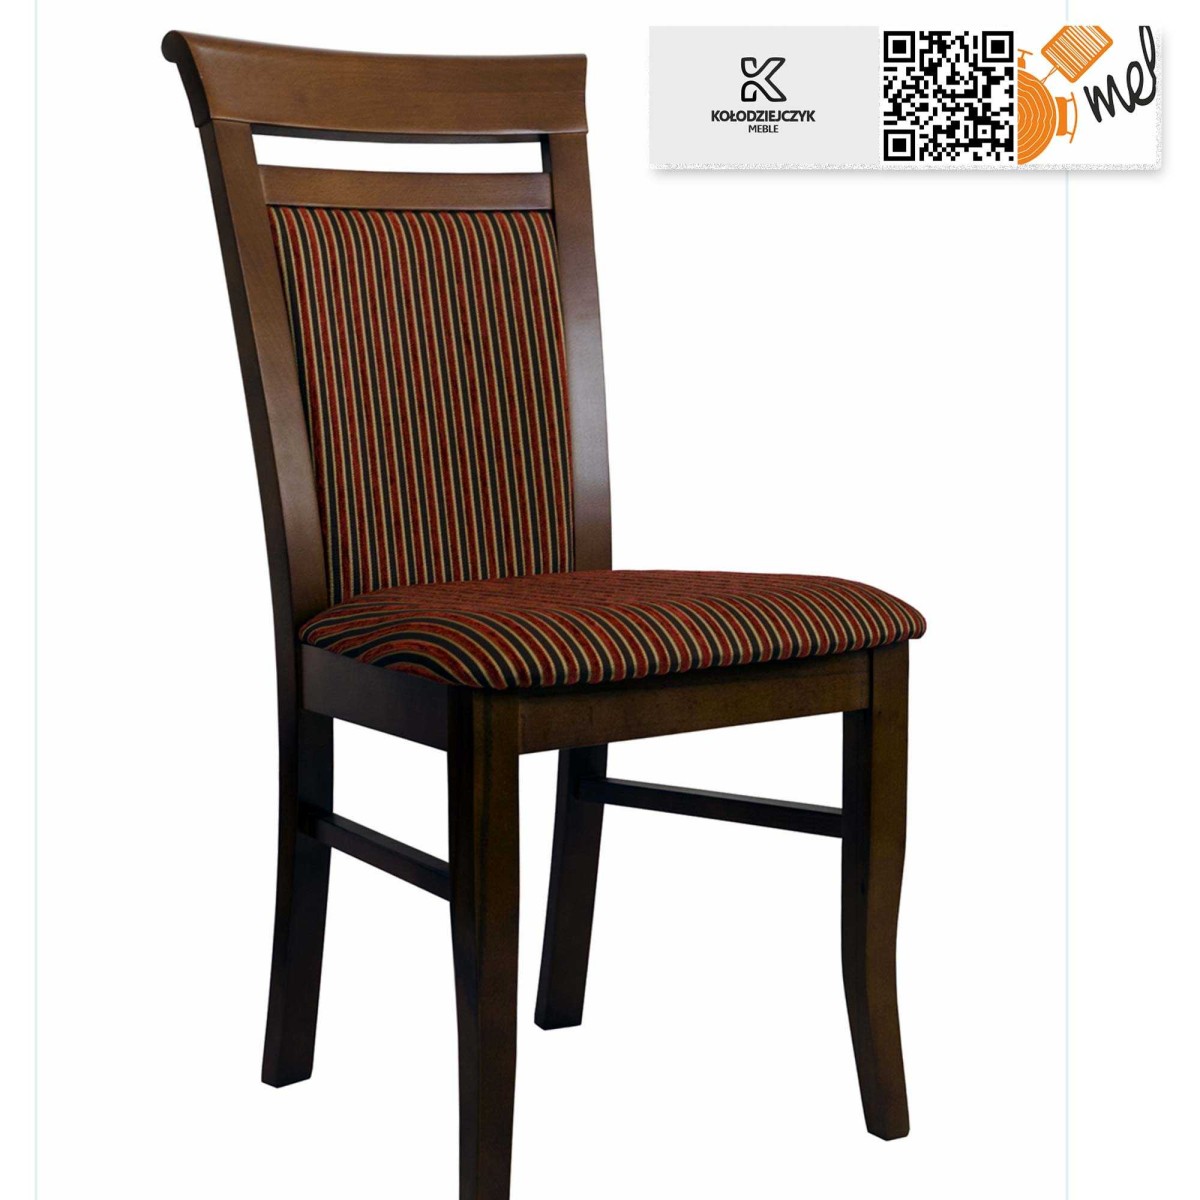 krzeslo k61 drewnaine stylowe turek